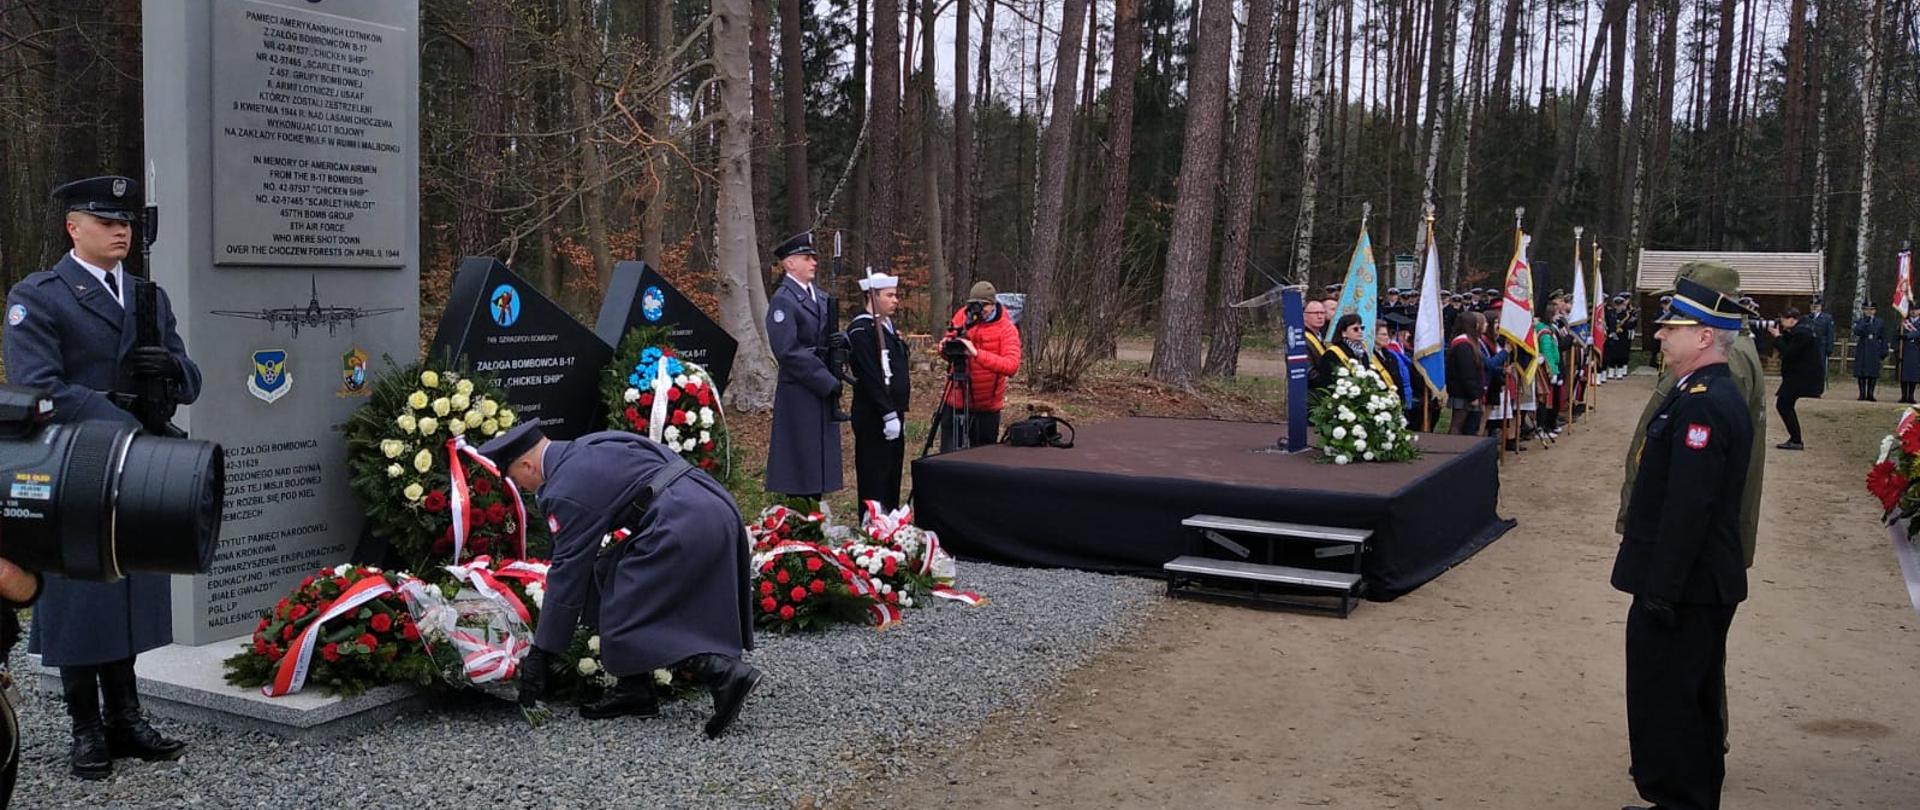 Na zdjęciu widać, żołnierza składającego bukiet kwiatów pod pomnikiem.